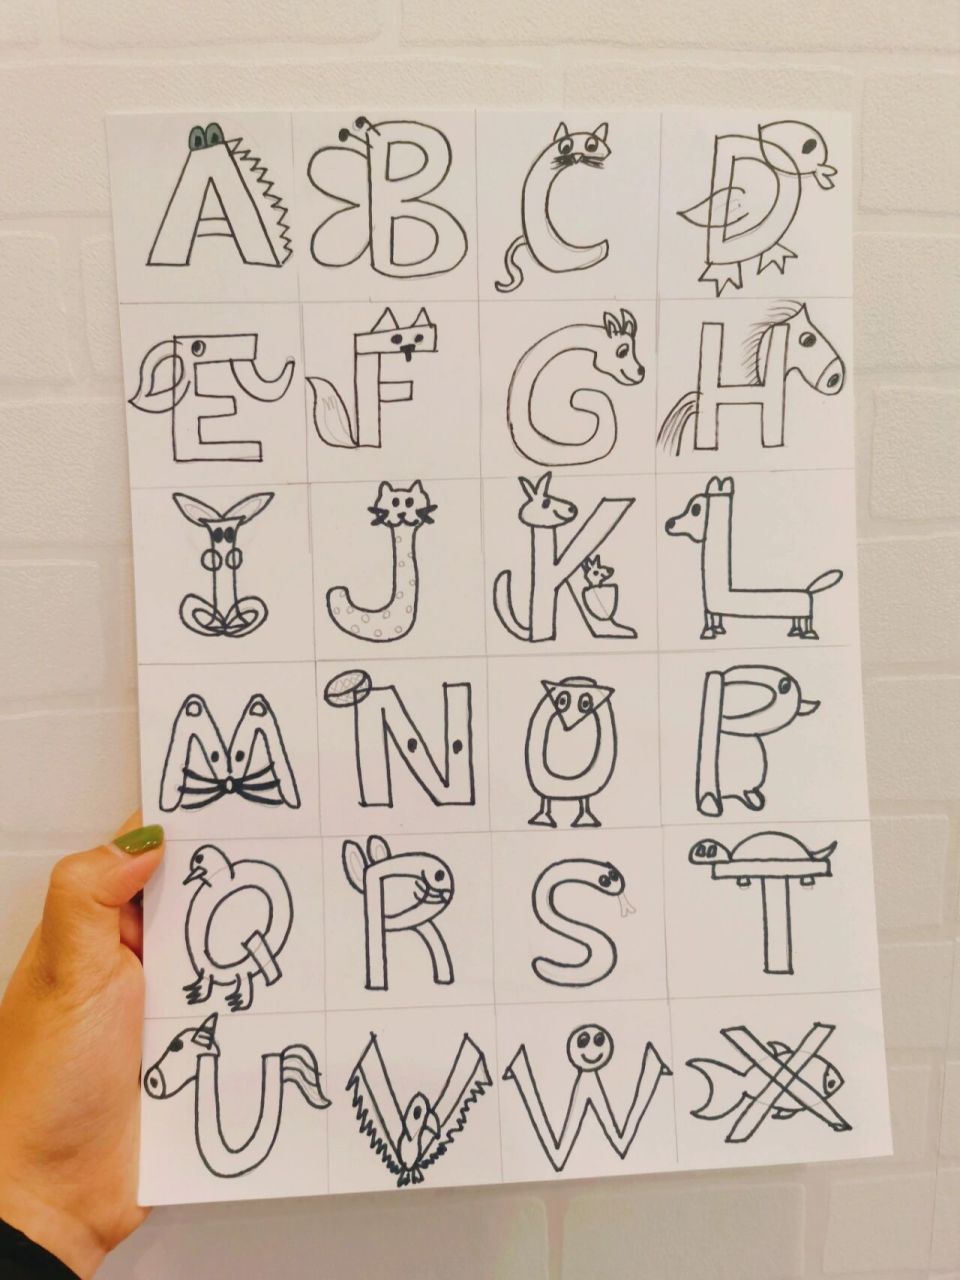 英语字母/手绘/创意画 26个英语字母,如何写的有创意? 看过来吧!